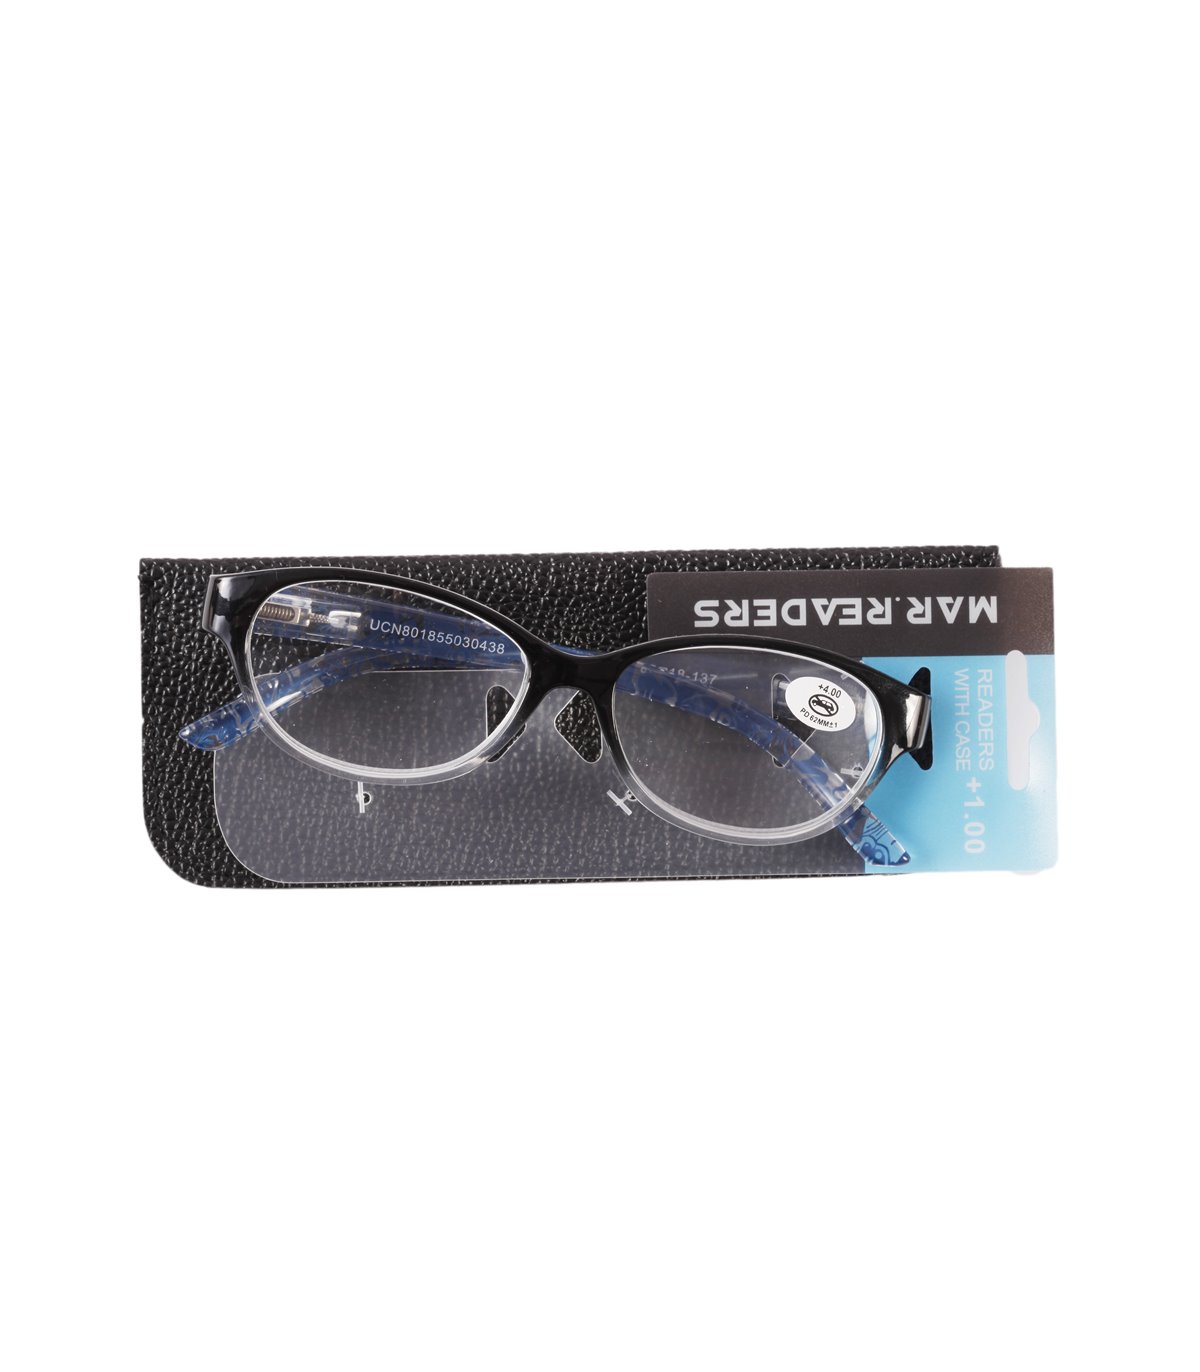 almohadilla Consultar Importancia Comprar Gafas De Lectura Modelo Om-806 en Wonduu al mejor precio